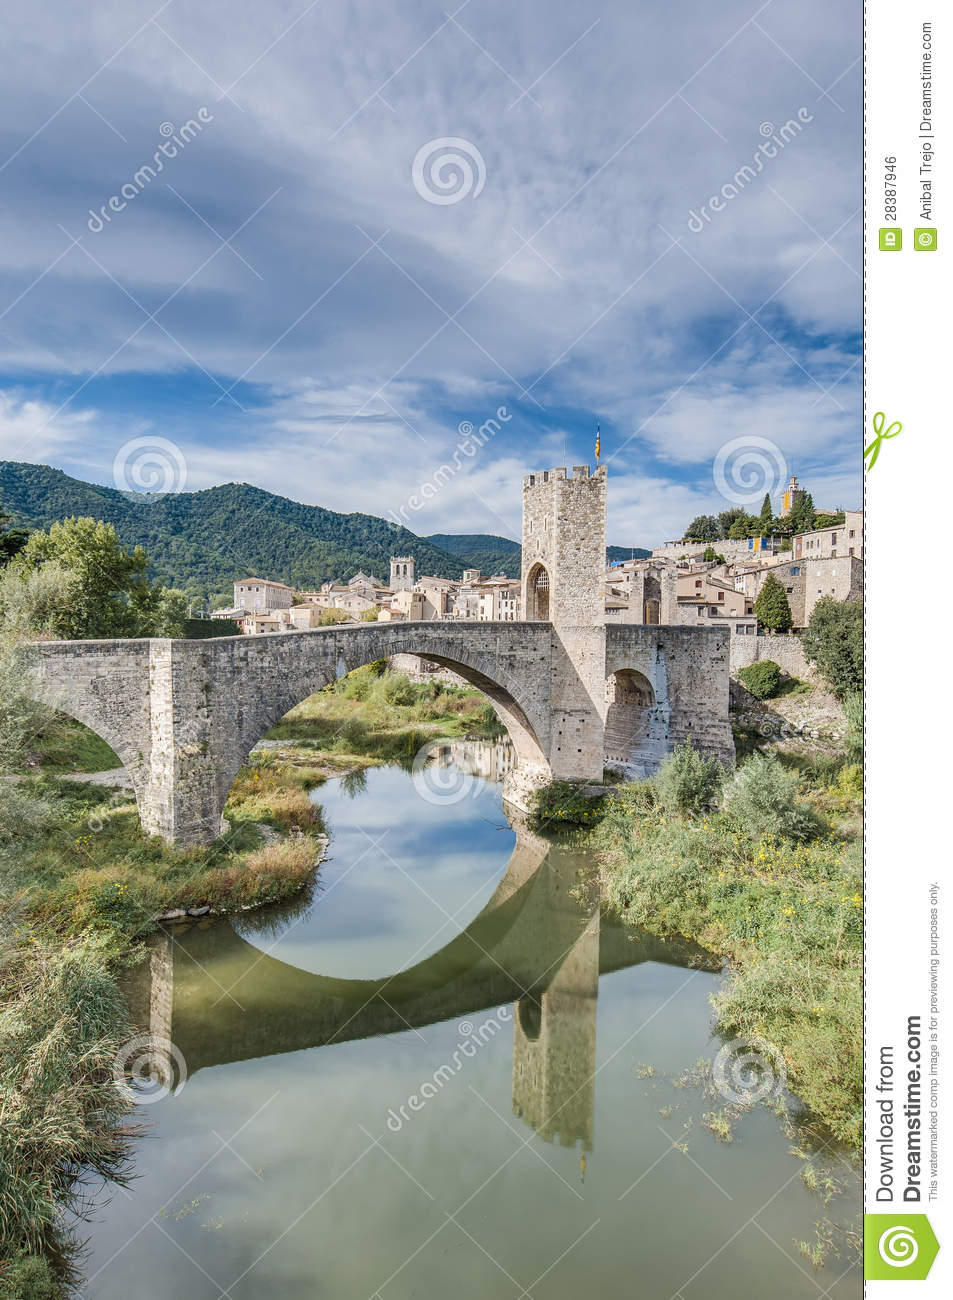 Medieval Bridge In Besalu Spain Royalty Free Stock Image   Image    